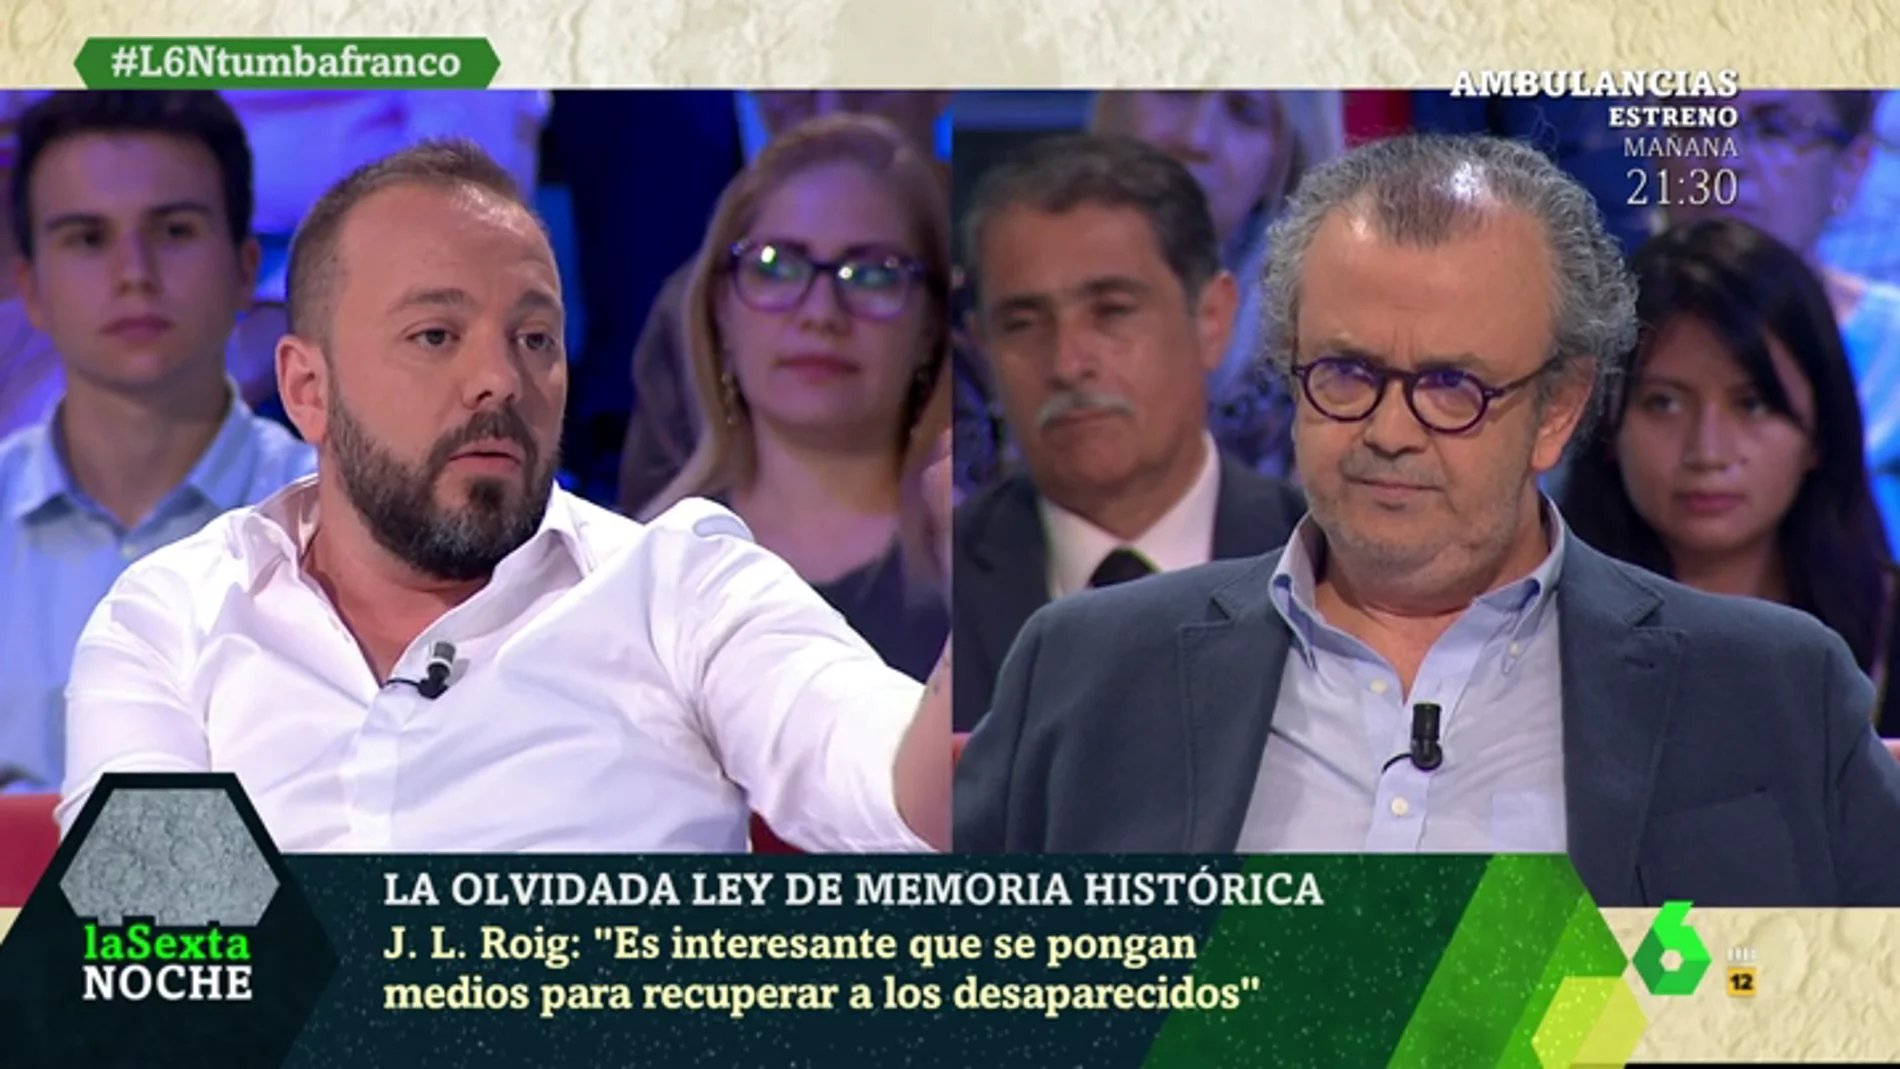 Antonio Maestre: "Decir que el Valle de los Caídos es un lugar de reconciliación es propaganda franquista"